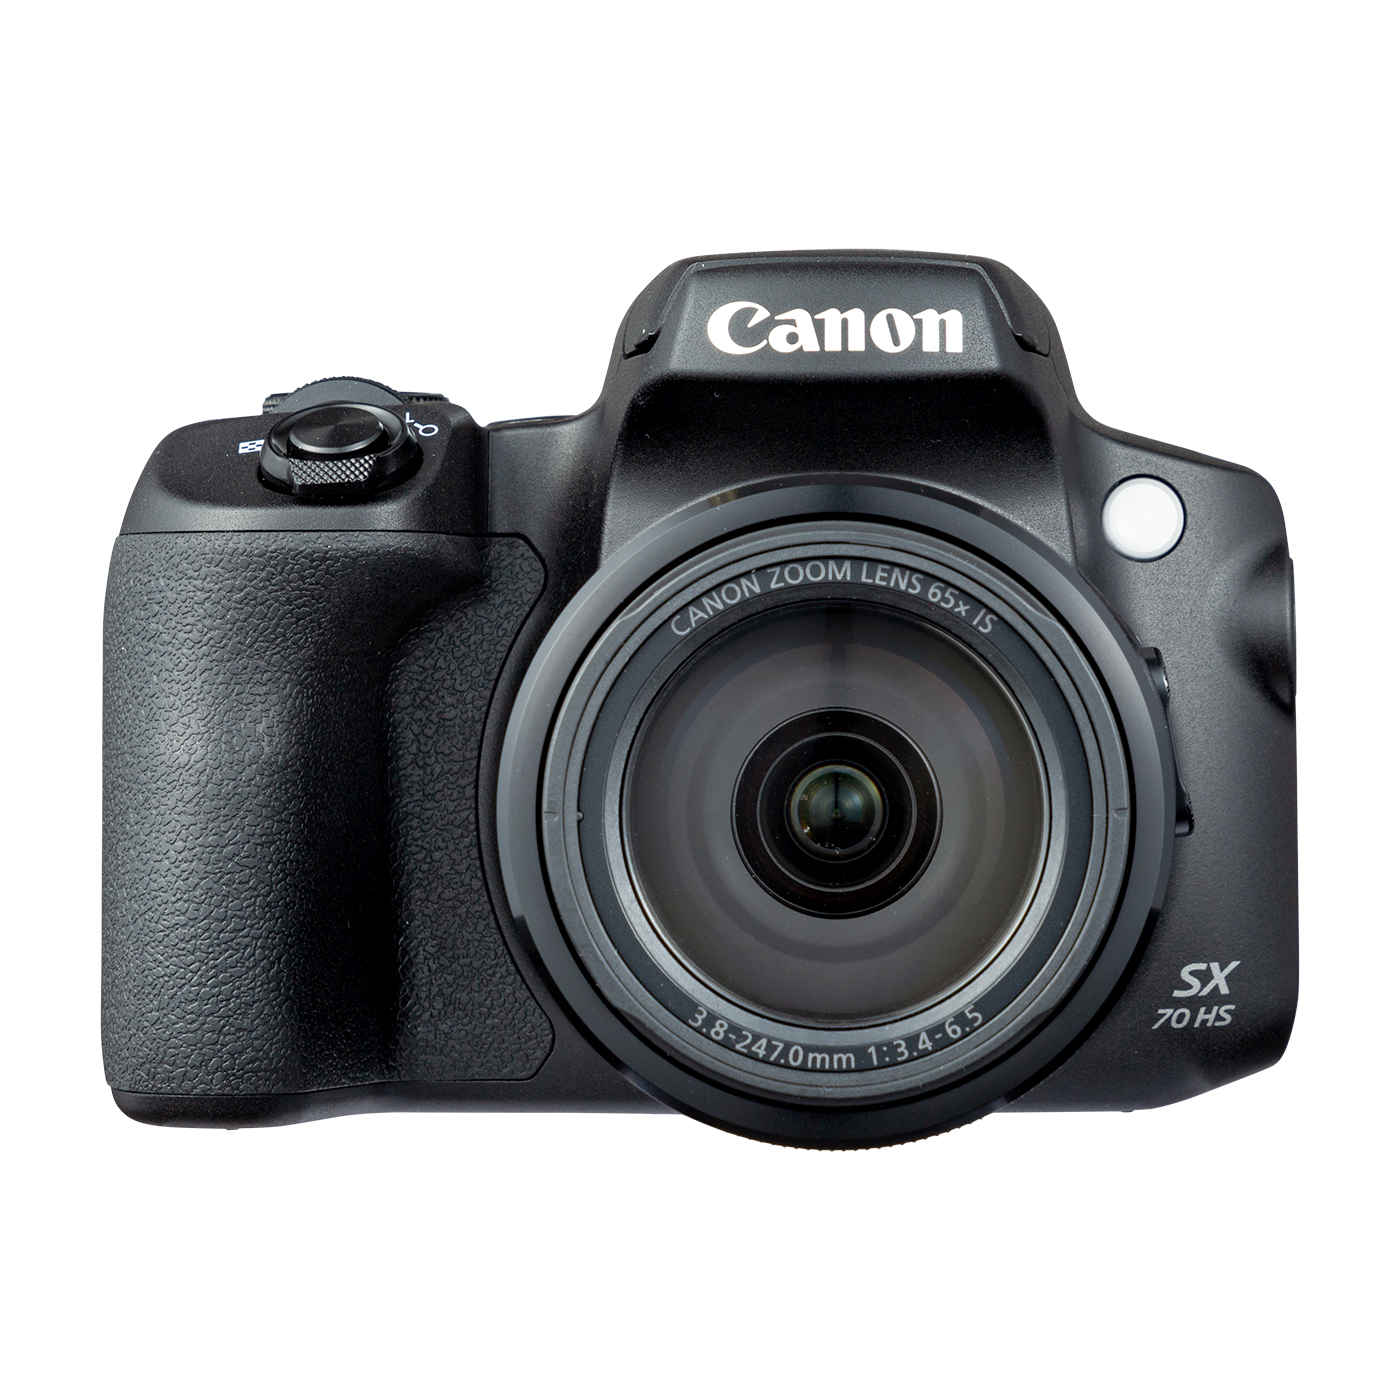 キヤノン キヤノン Canon PowerShot SX70 HS パワーショット コンパクトデジタルカメラ コンデジ カメラ